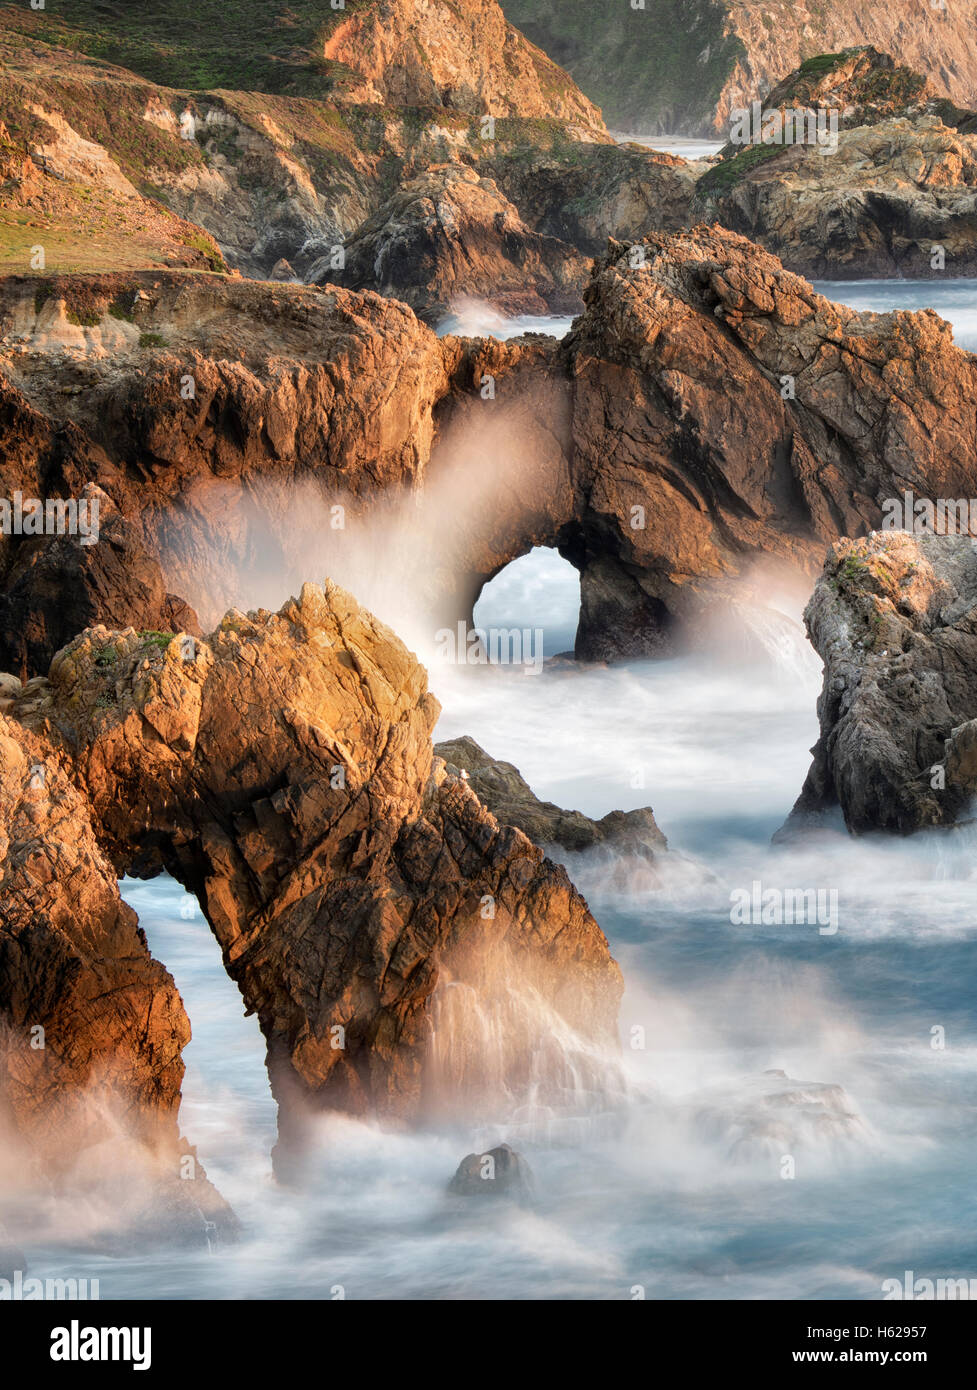 Los arcos y las olas en la costa de Big Sur, California Foto de stock